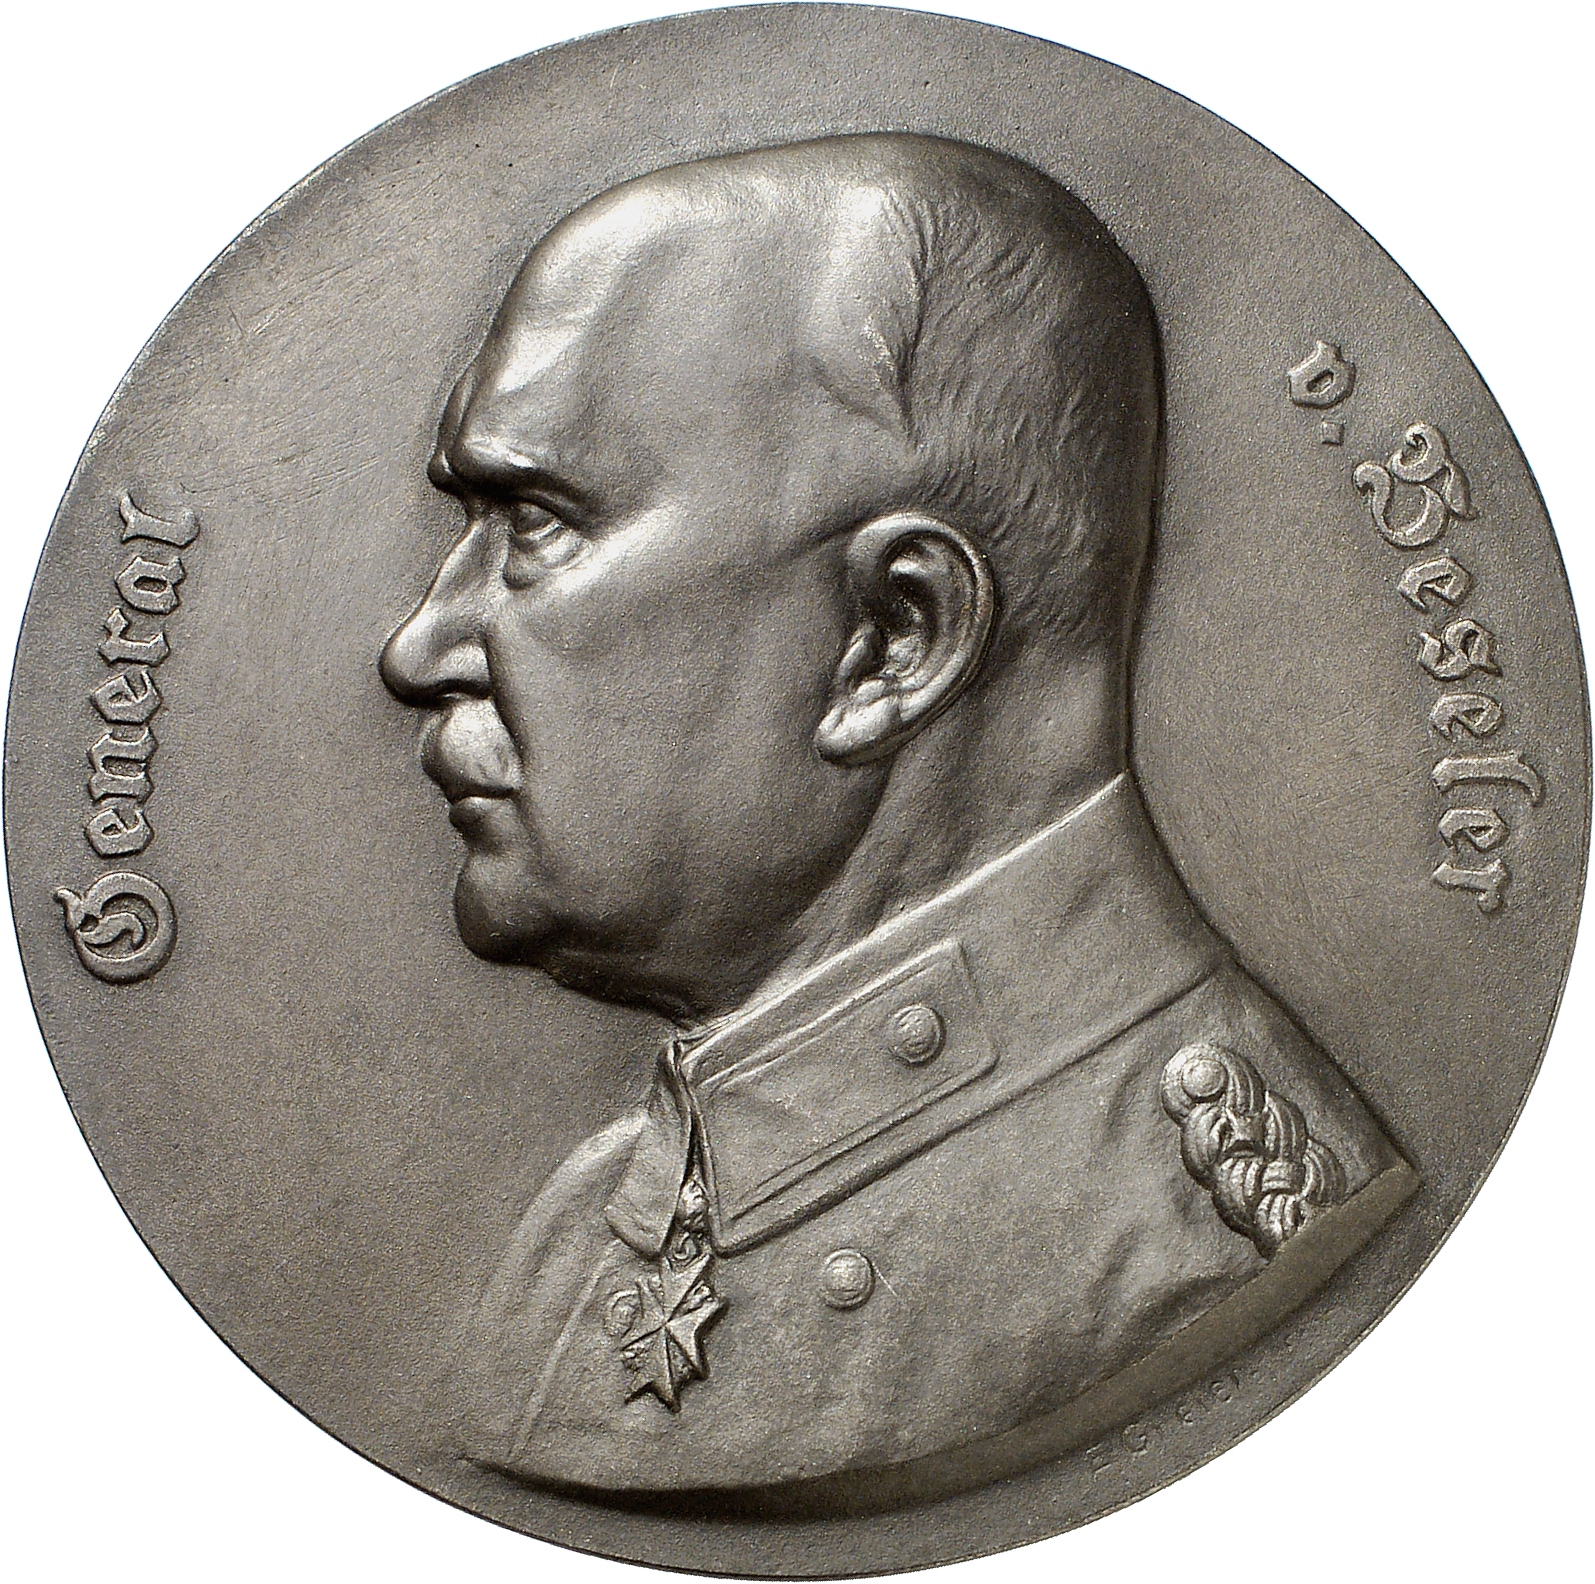 Greier, Ernst: General Hans von Beseler